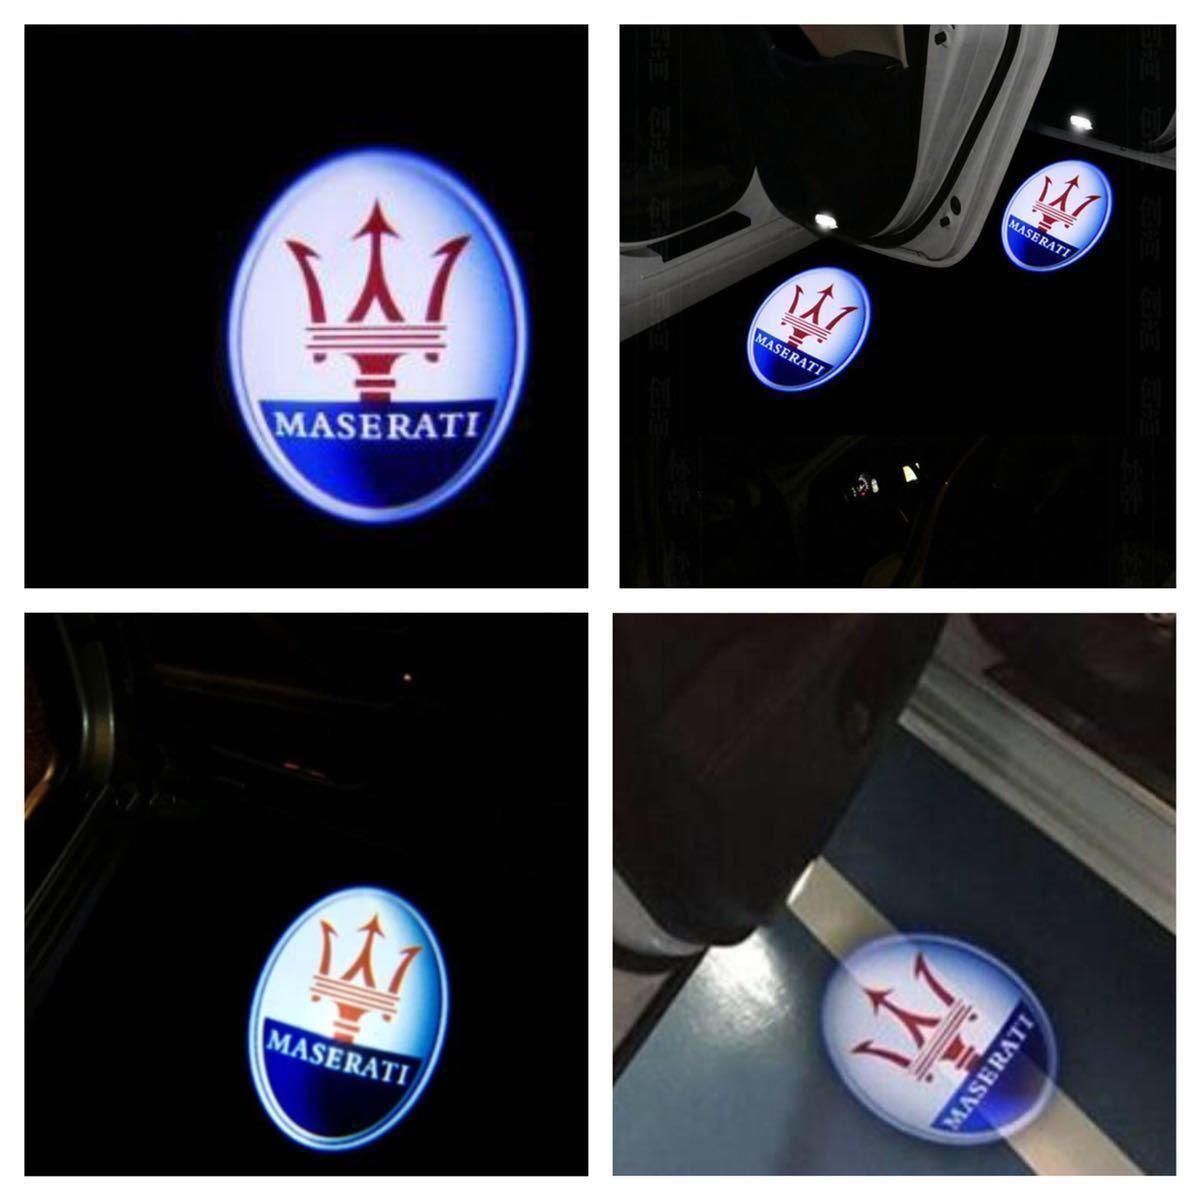 Maserati マセラティ ロゴ プロジェクター カーテシランプ LED 純正交換 レヴァンテ クアトロポルテ ギブリ ドア ライト Ghibli/Levanteの画像2